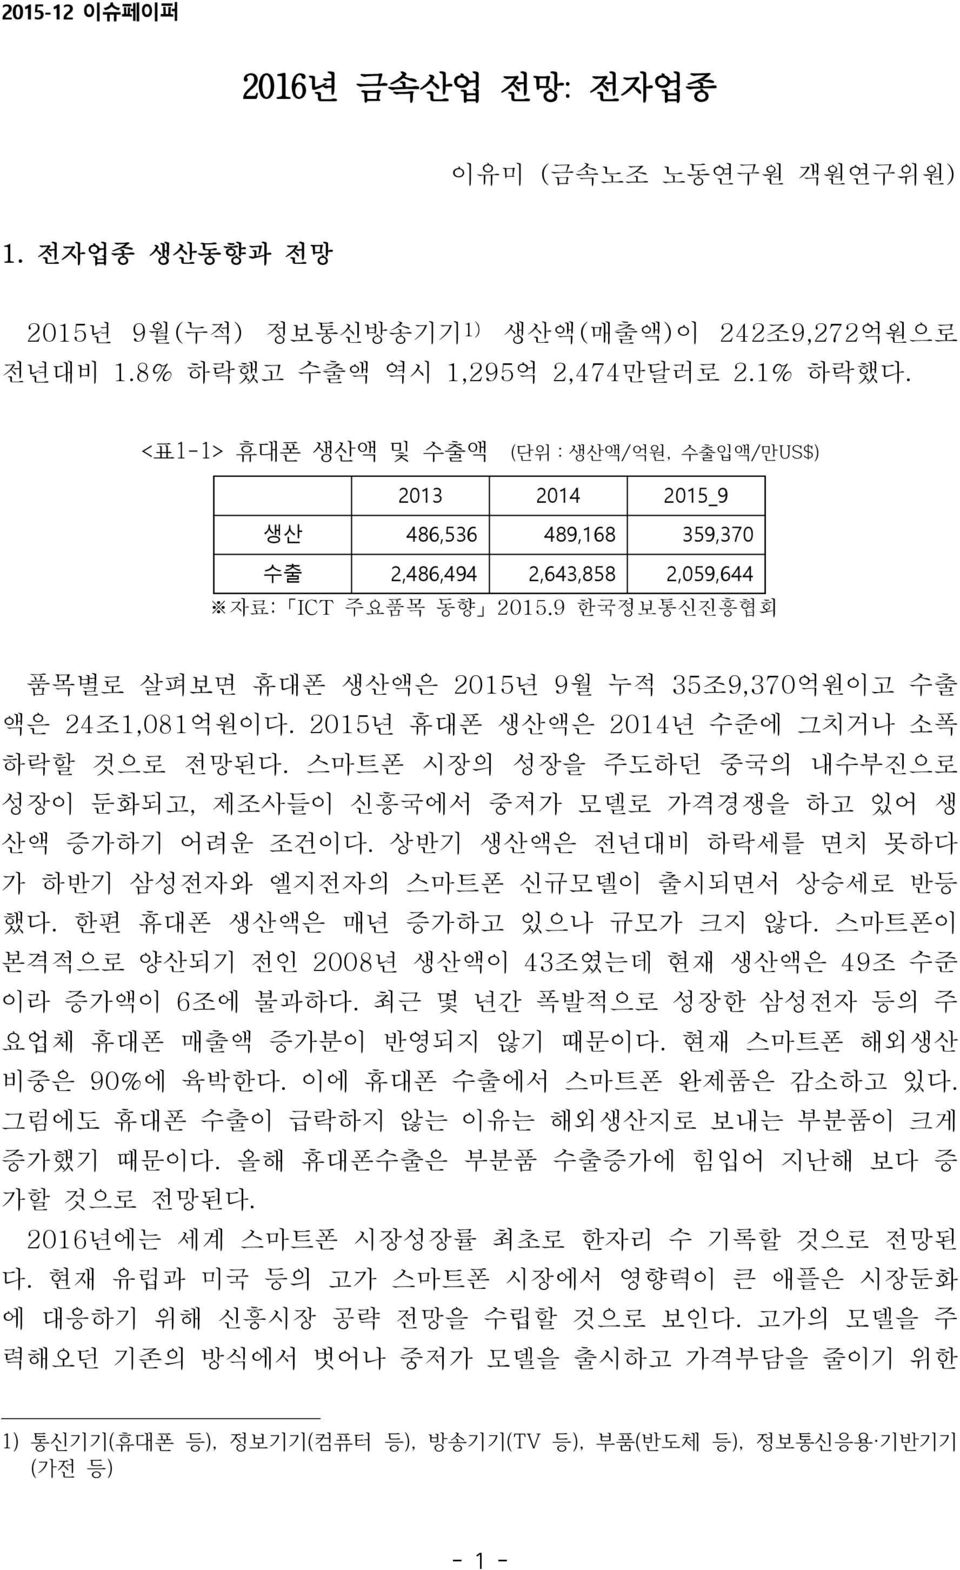 9 한국정보통신진흥협회 품목별로 살펴보면 휴대폰 생산액은 2015년 9월 누적 35조9,370억원이고 수출 액은 24조1,081억원이다. 2015년 휴대폰 생산액은 년 수준에 그치거나 소폭 하락할 것으로 전망된다.